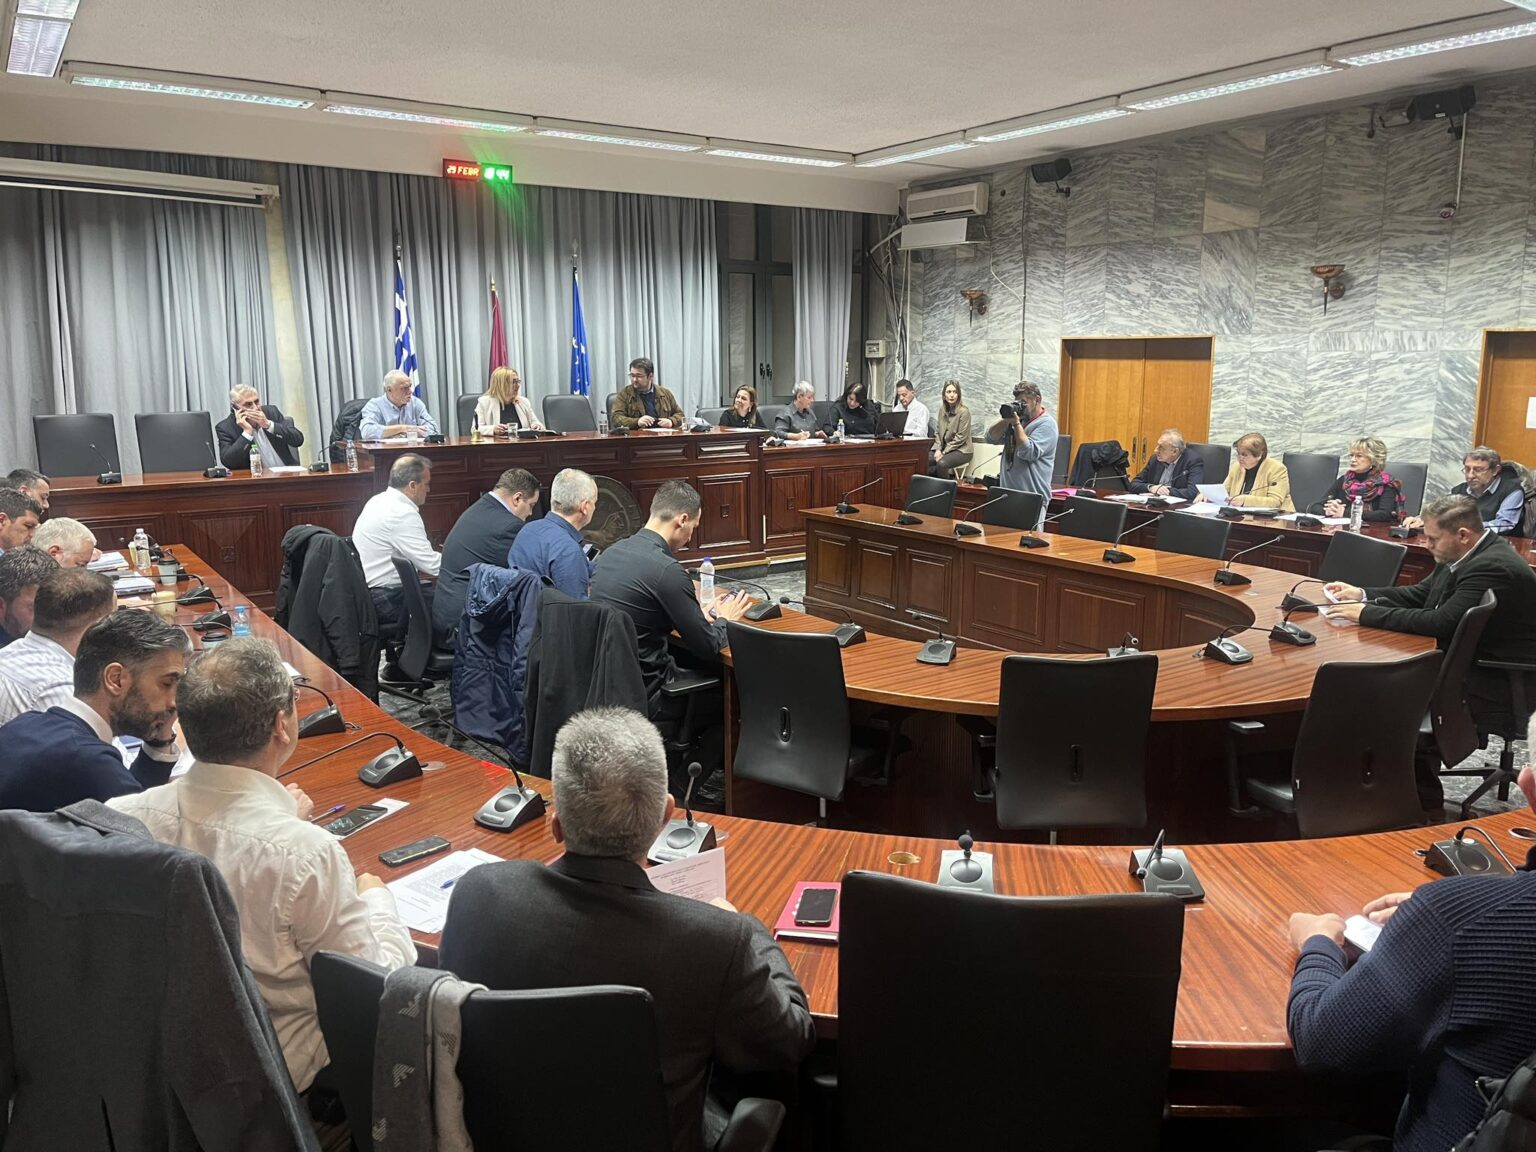 Λάρισα: Η πρώτη συνεδρίαση λογοδοσίας της νέας δημοτικής αρχής 